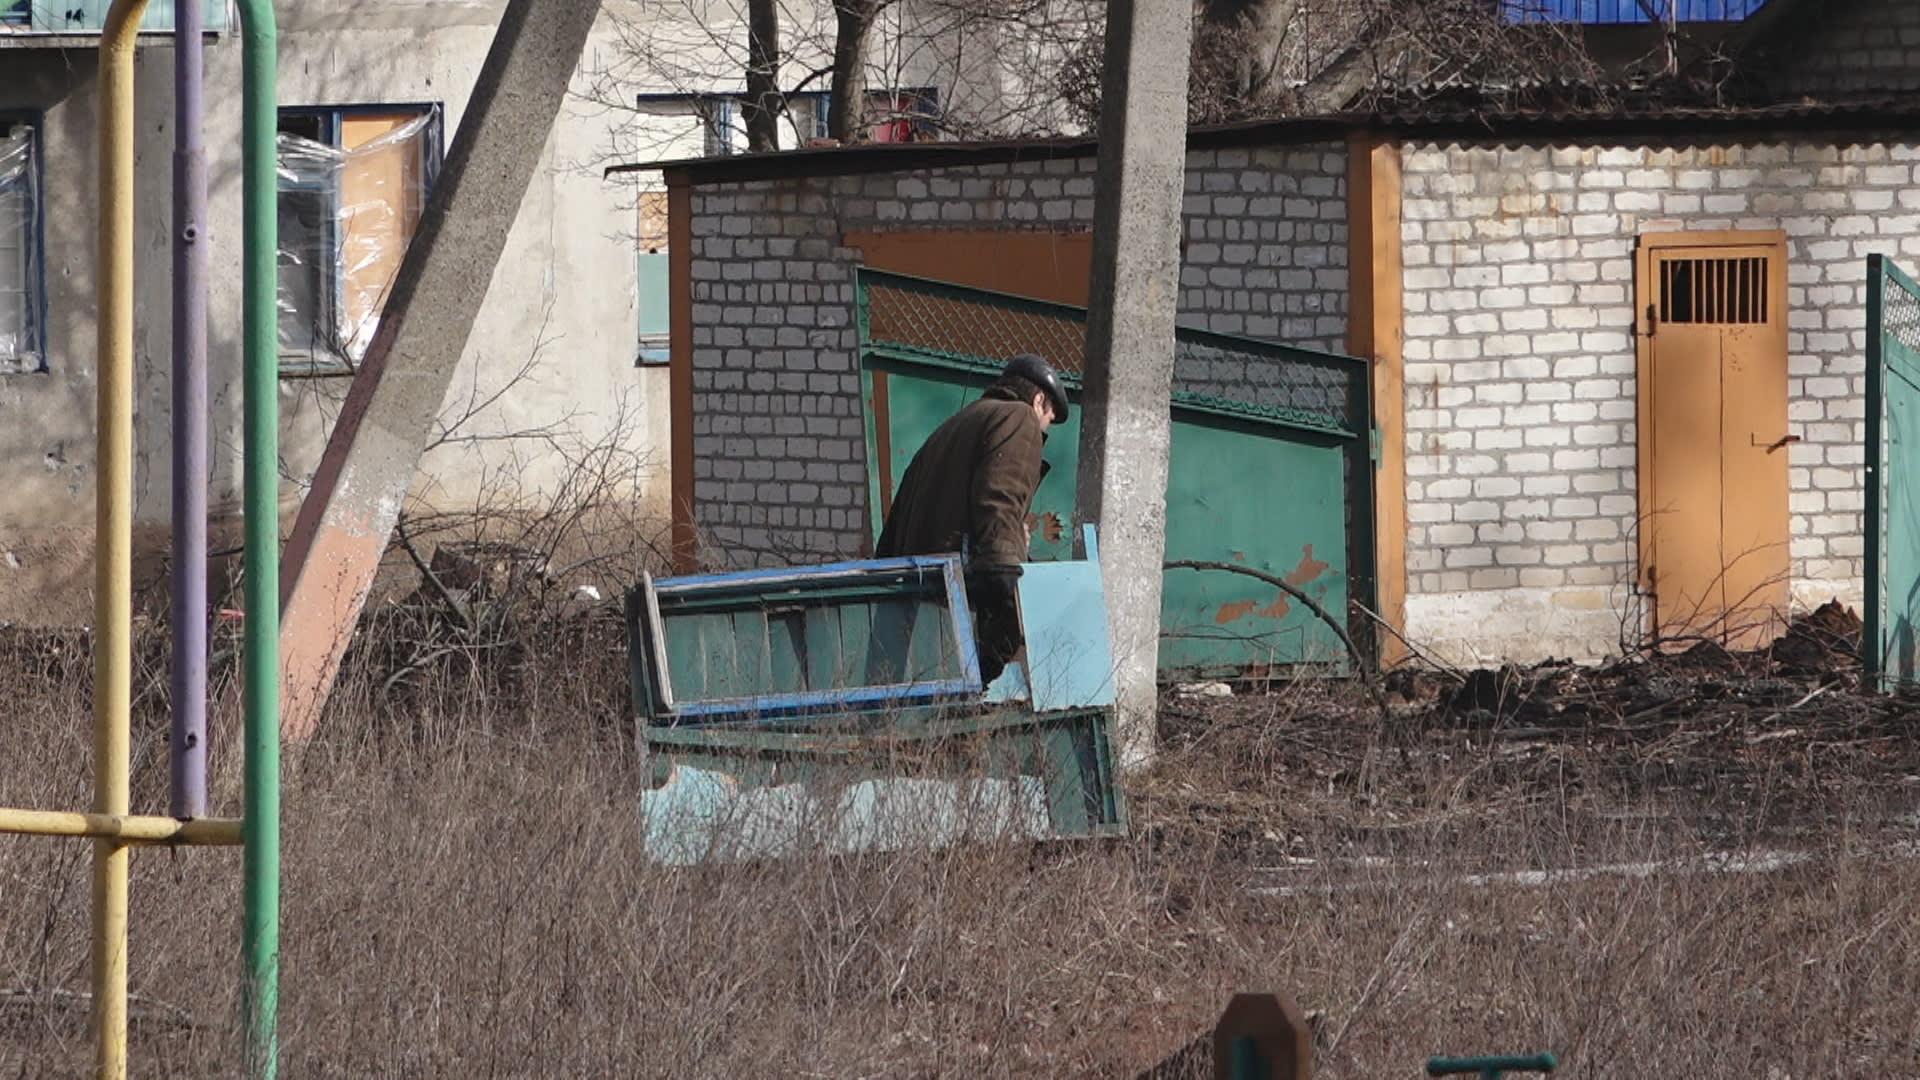 Štáb CNN Prima NEWS přihlížel akci Ukrajinců s drony.